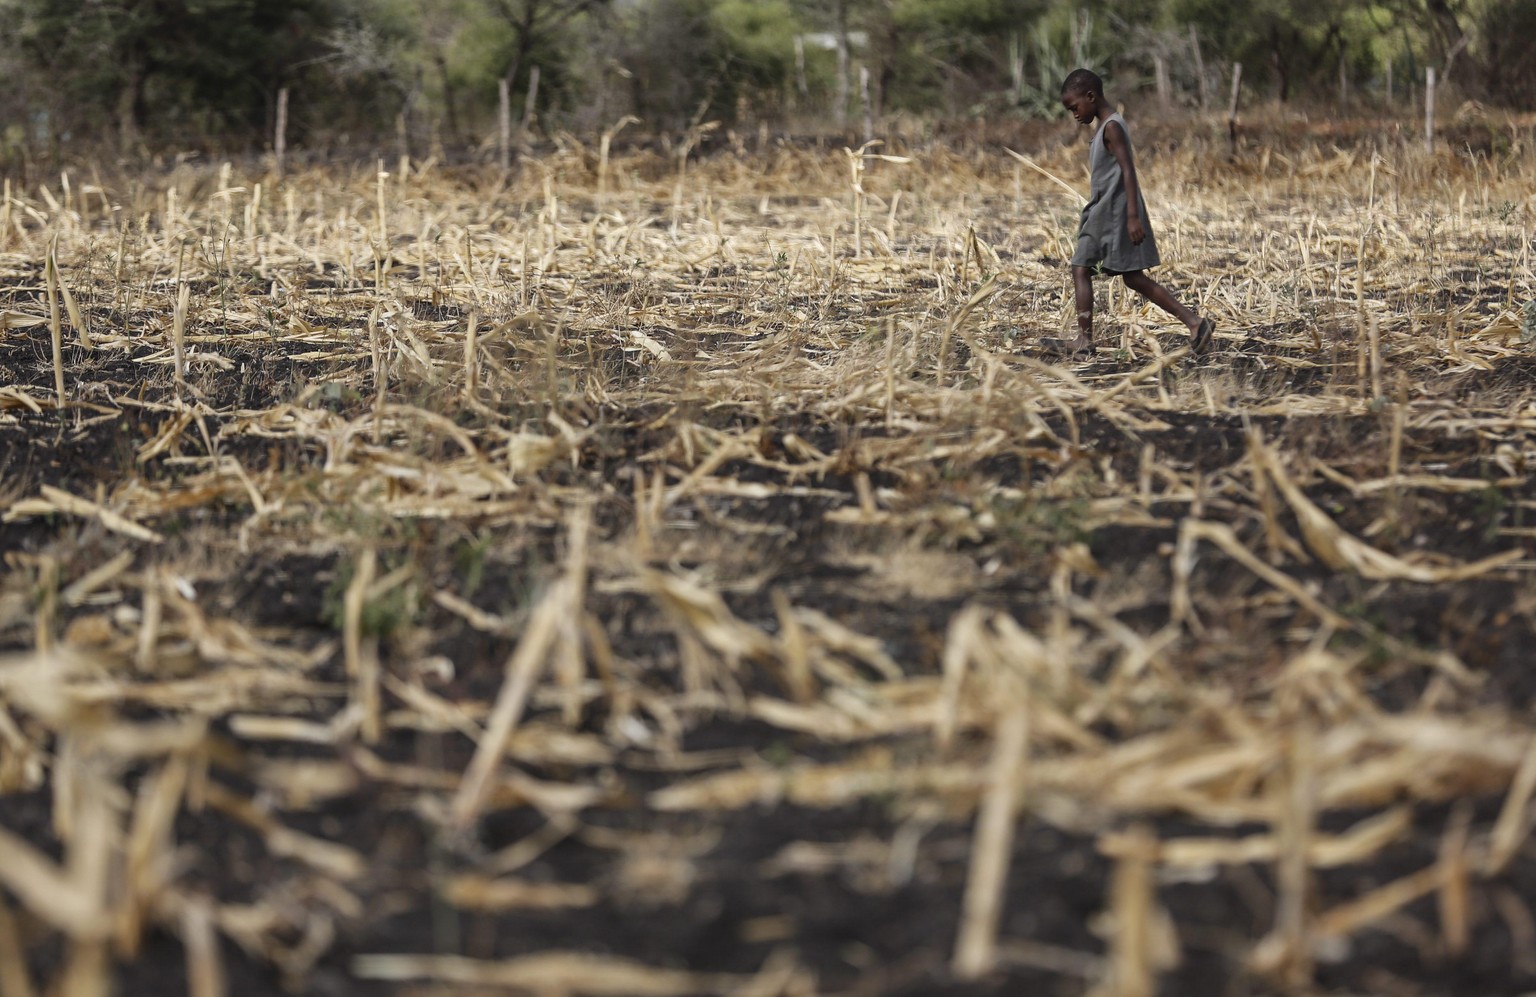 Die Dürre sorgt vielerorts für Wasserknappheit und Ernteverlust. Die Klimakrise trifft die Schwächsten und Ärmsten am härtesten.